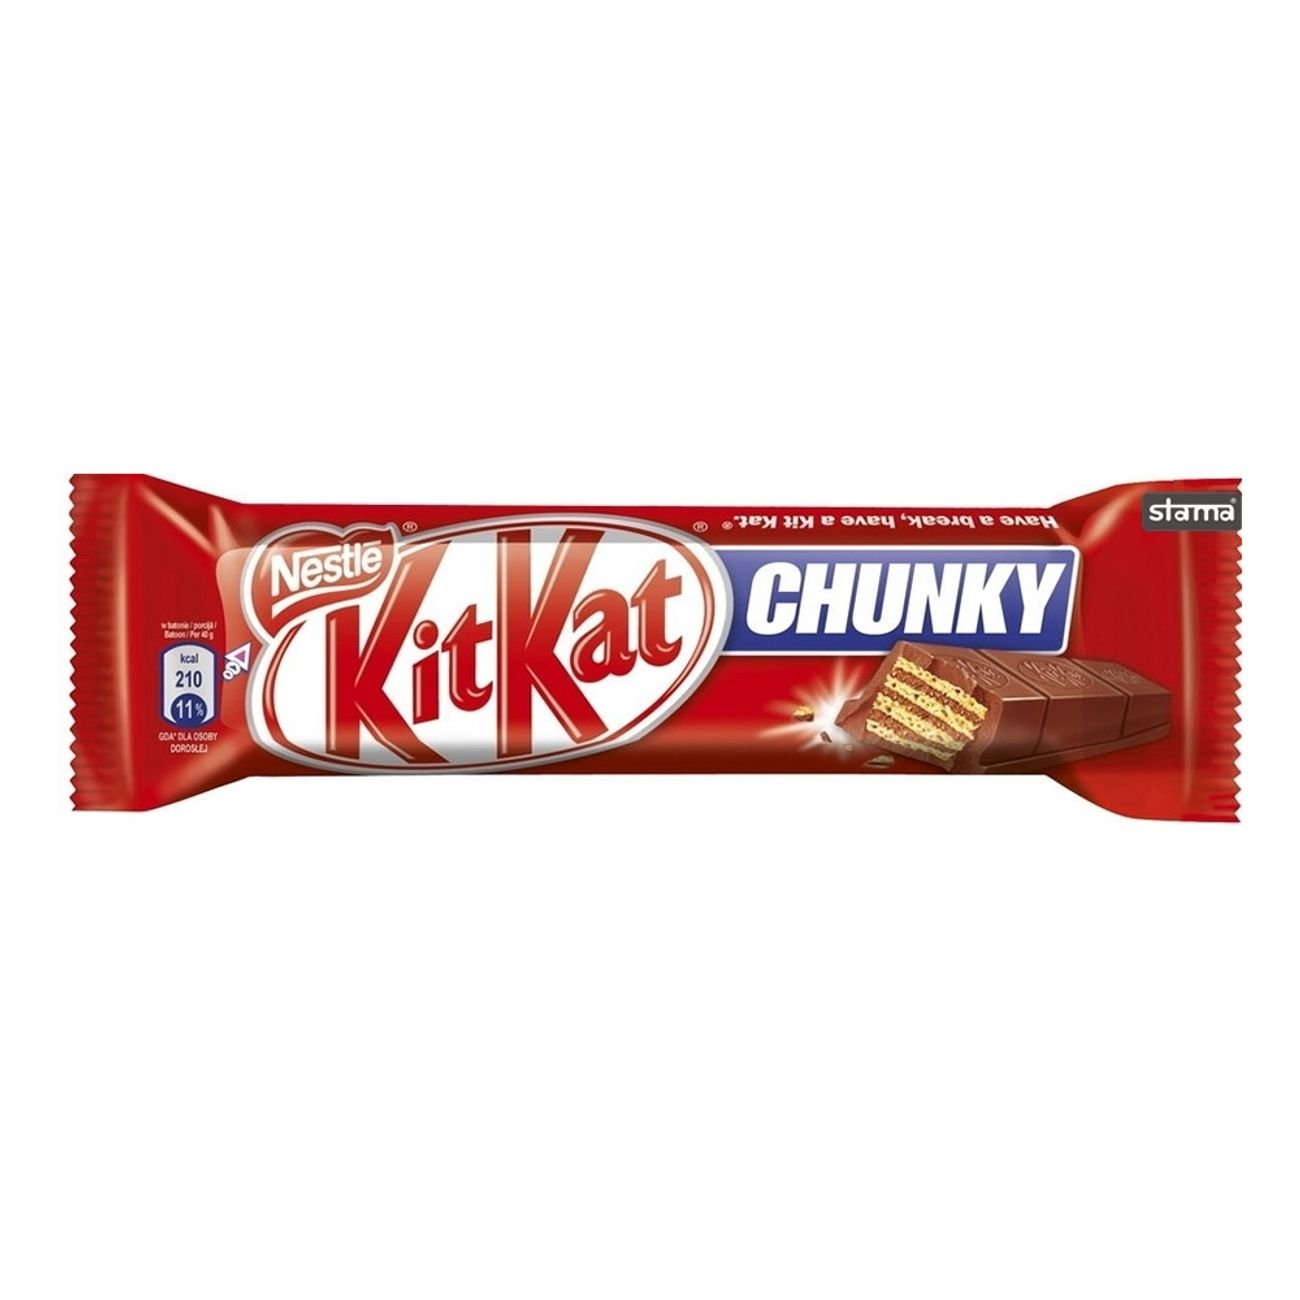 Kitkat chunky 40g sustainably coco